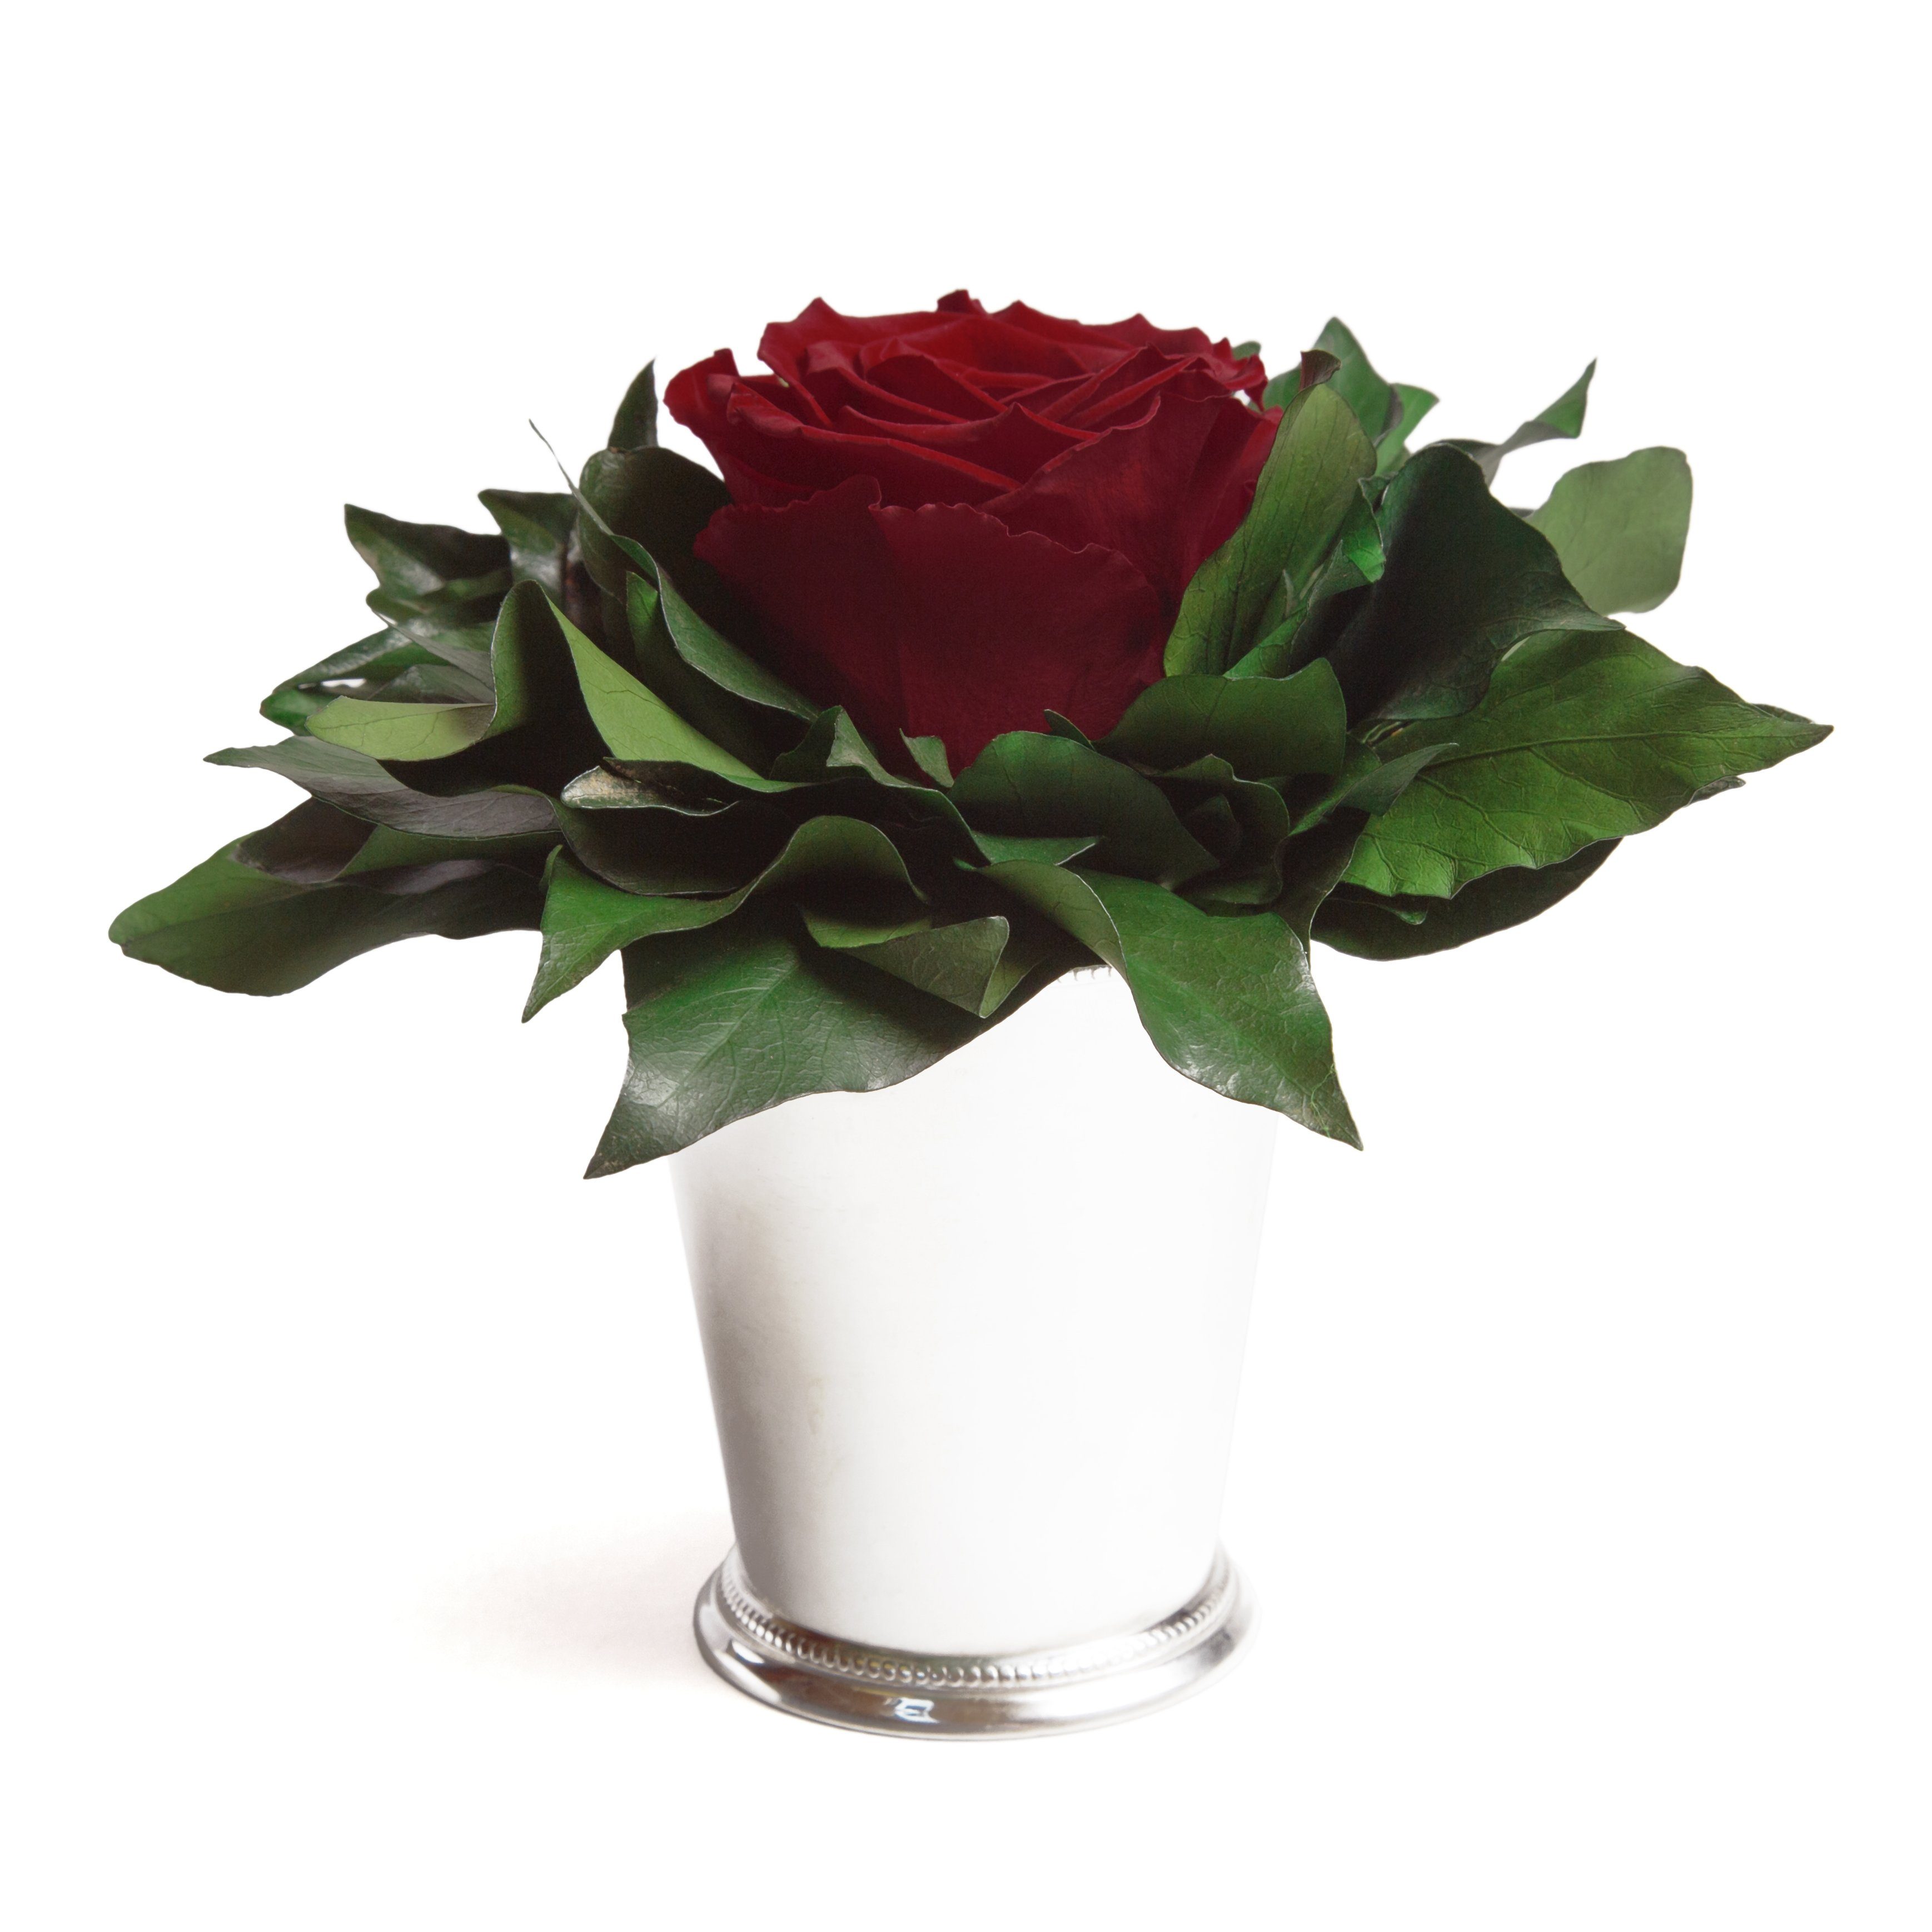 Künstliche Zimmerpflanze 1 Infinity Blume Becher silberfarben Geschenkidee für Frauen Rose, ROSEMARIE SCHULZ Heidelberg, Höhe 12 cm, Echte Rose lange haltbar